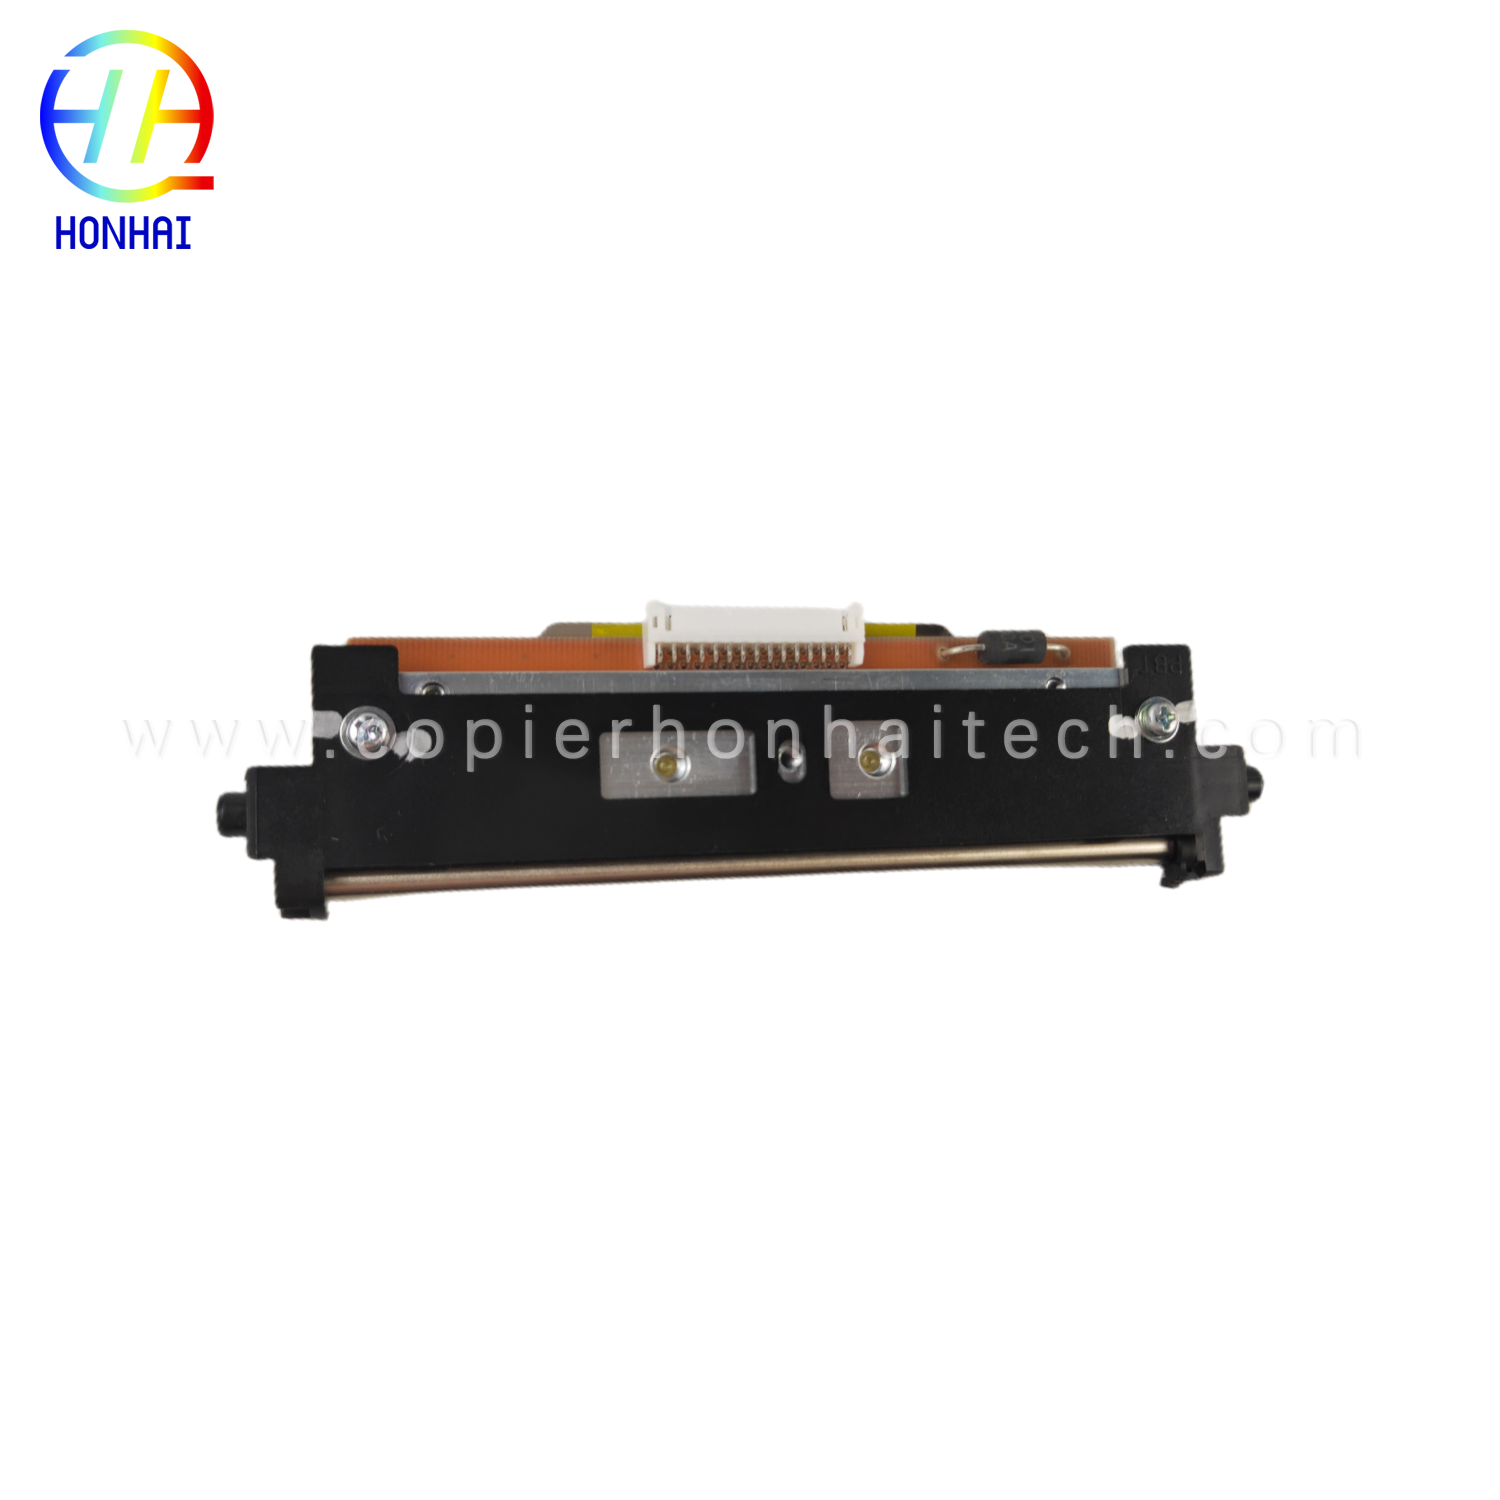 Cabezal de impresión original para impresora térmica Citizen CL-S700 CL-S700C JN09802-0C